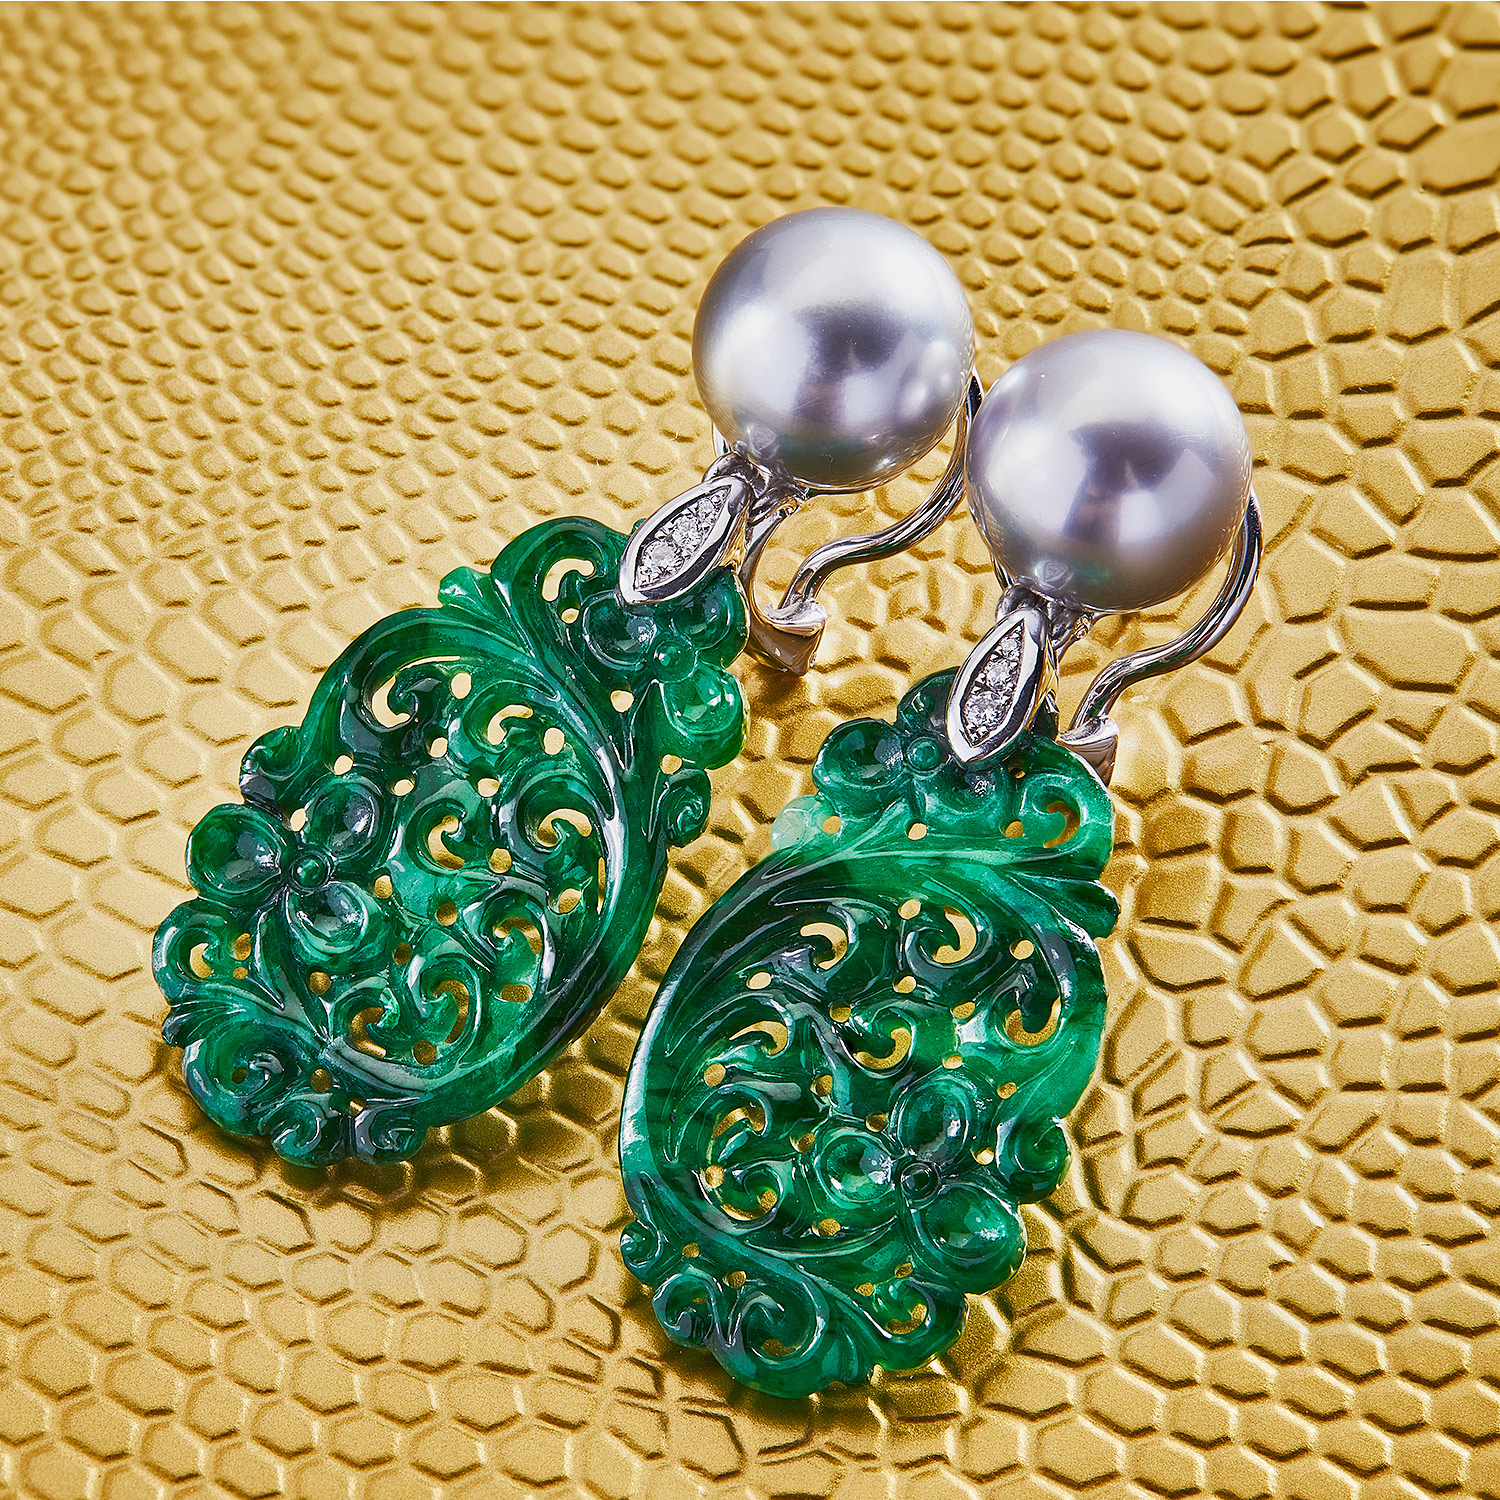 Ohrclip in Weissgold mit grüner Jade-Schnitzerei und grauen Tahiti-Perlen, Messerer Juwelier Zürich